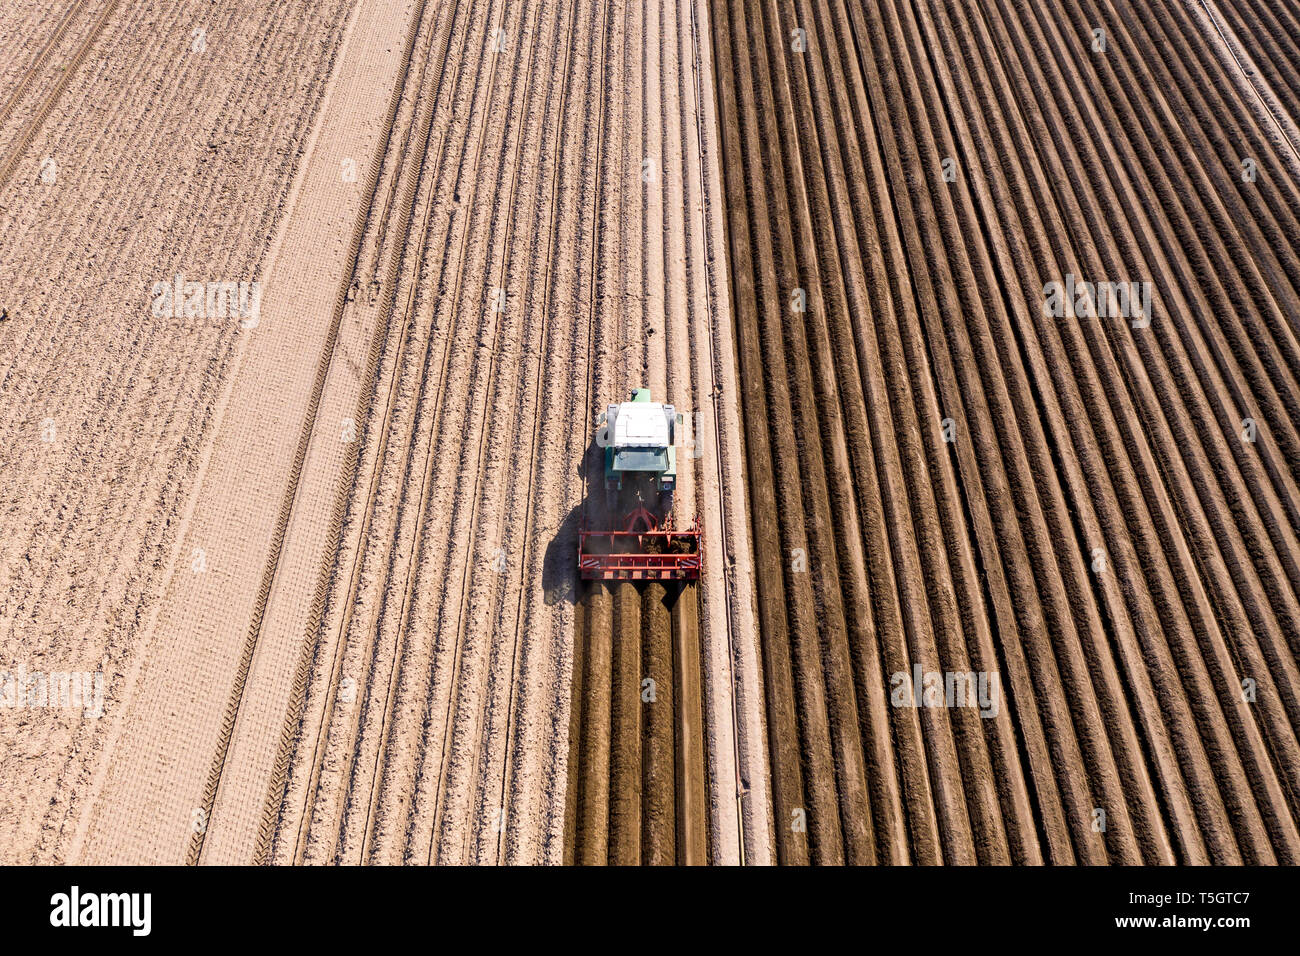 Germania, Hesse, vista aerea del trattore sul campo di asparagi Foto Stock